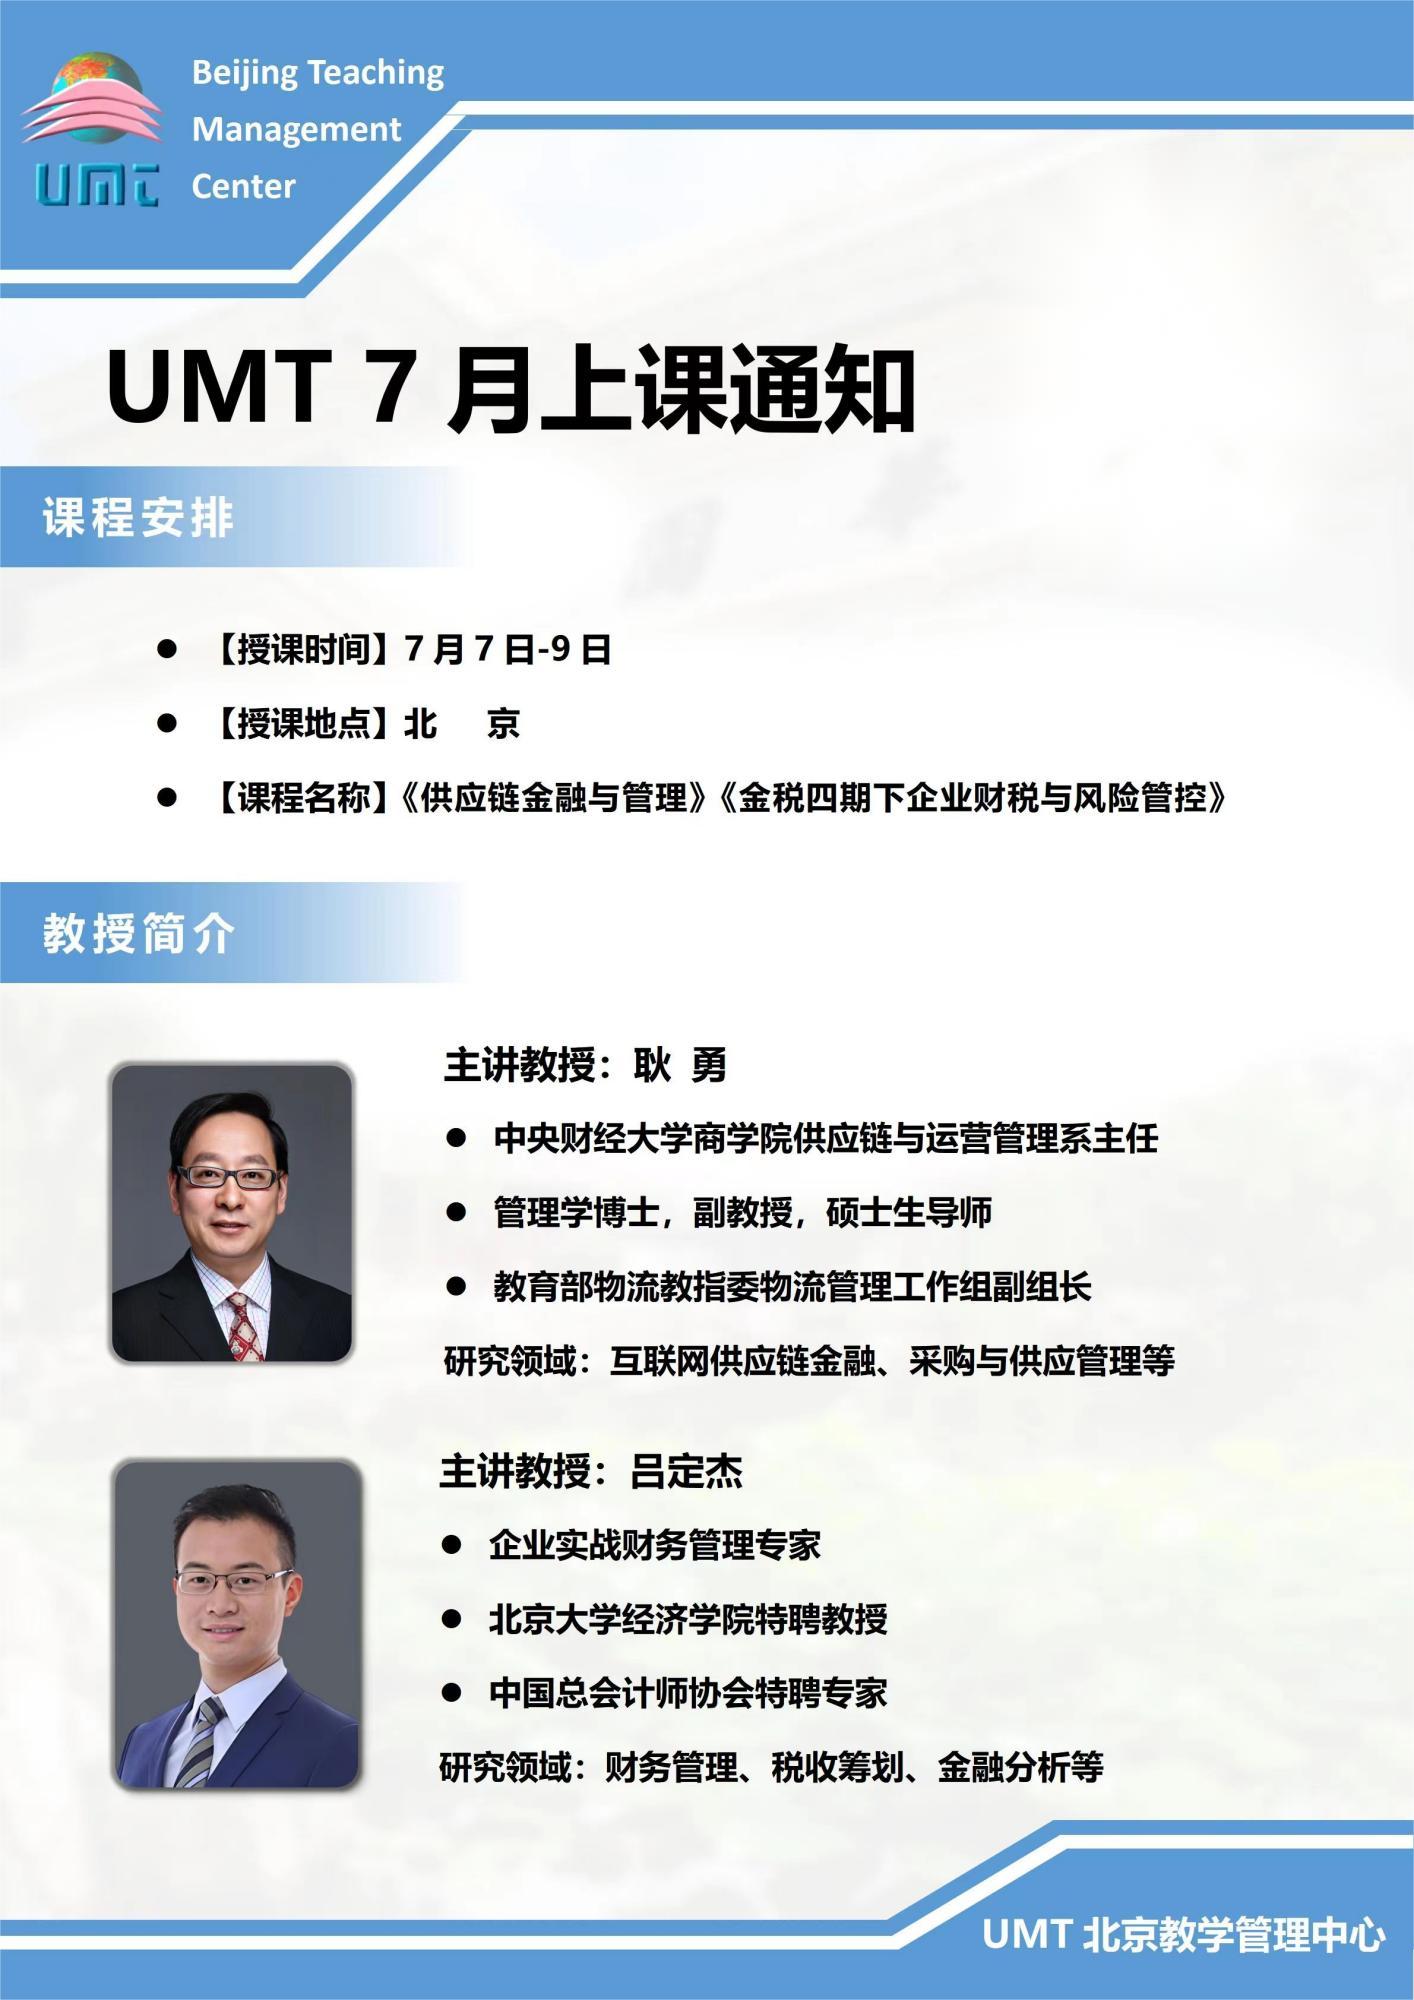 清华UMT 清华大学UMT 国外学位班 美国管理技术大学MBA 国外MBA课程